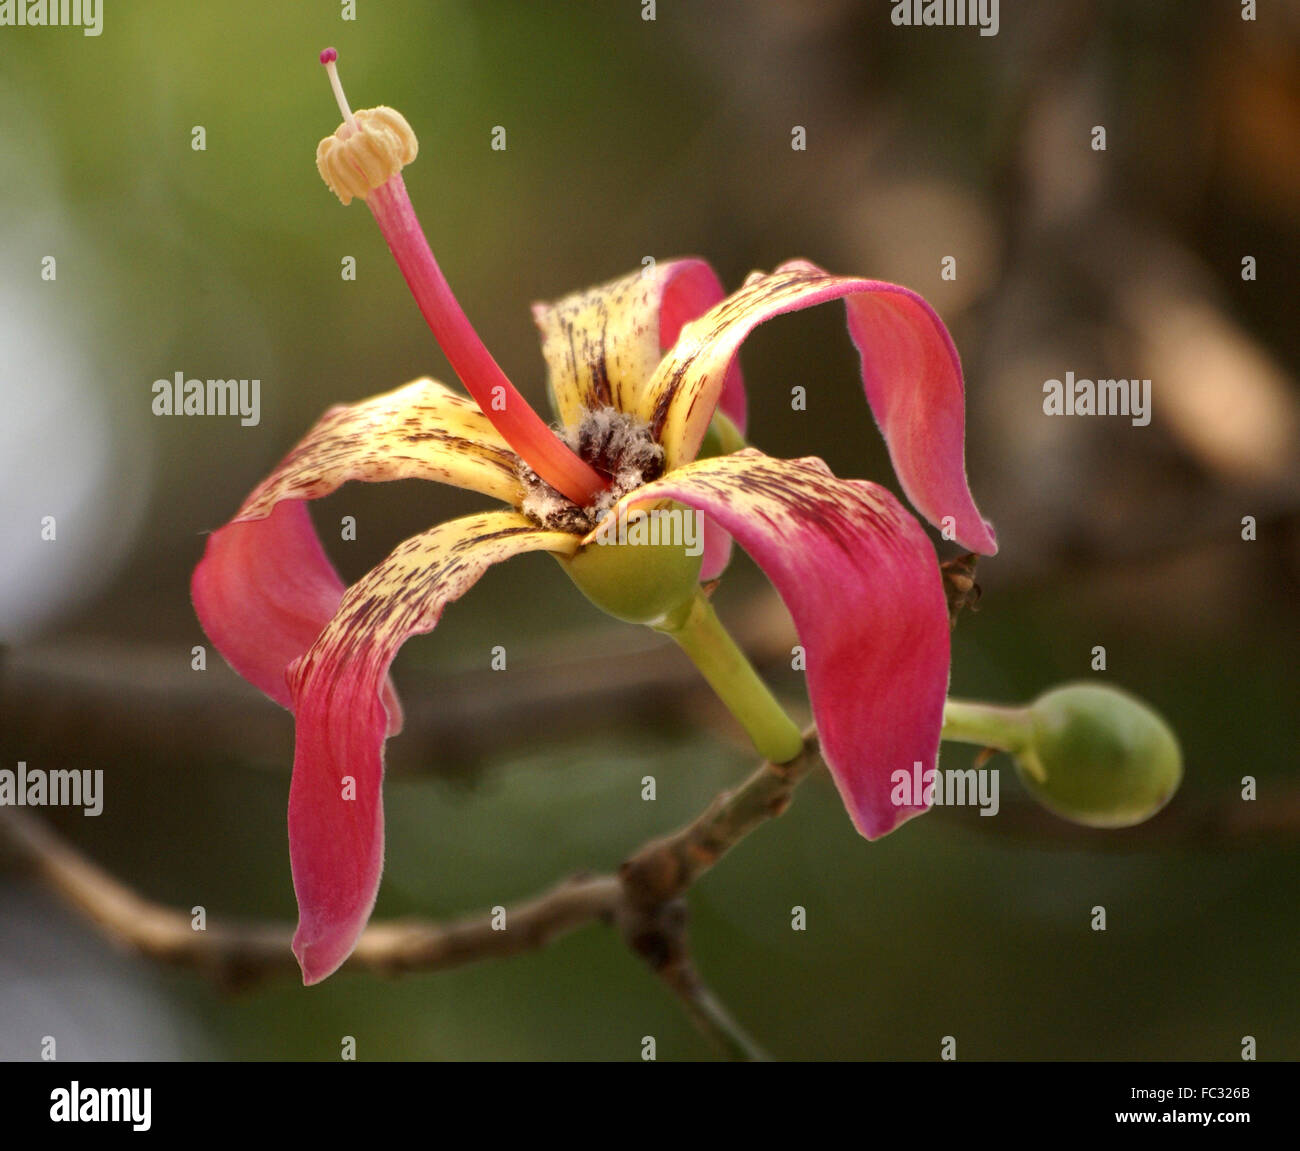 Ceiba Speciosa, Seide Zahnseide Baum mit stacheligen Stamm und Äste, handförmig zusammengesetzte Blätter rosa Verbreitung Blumen, Kapsel, Zahnseide Stockfoto